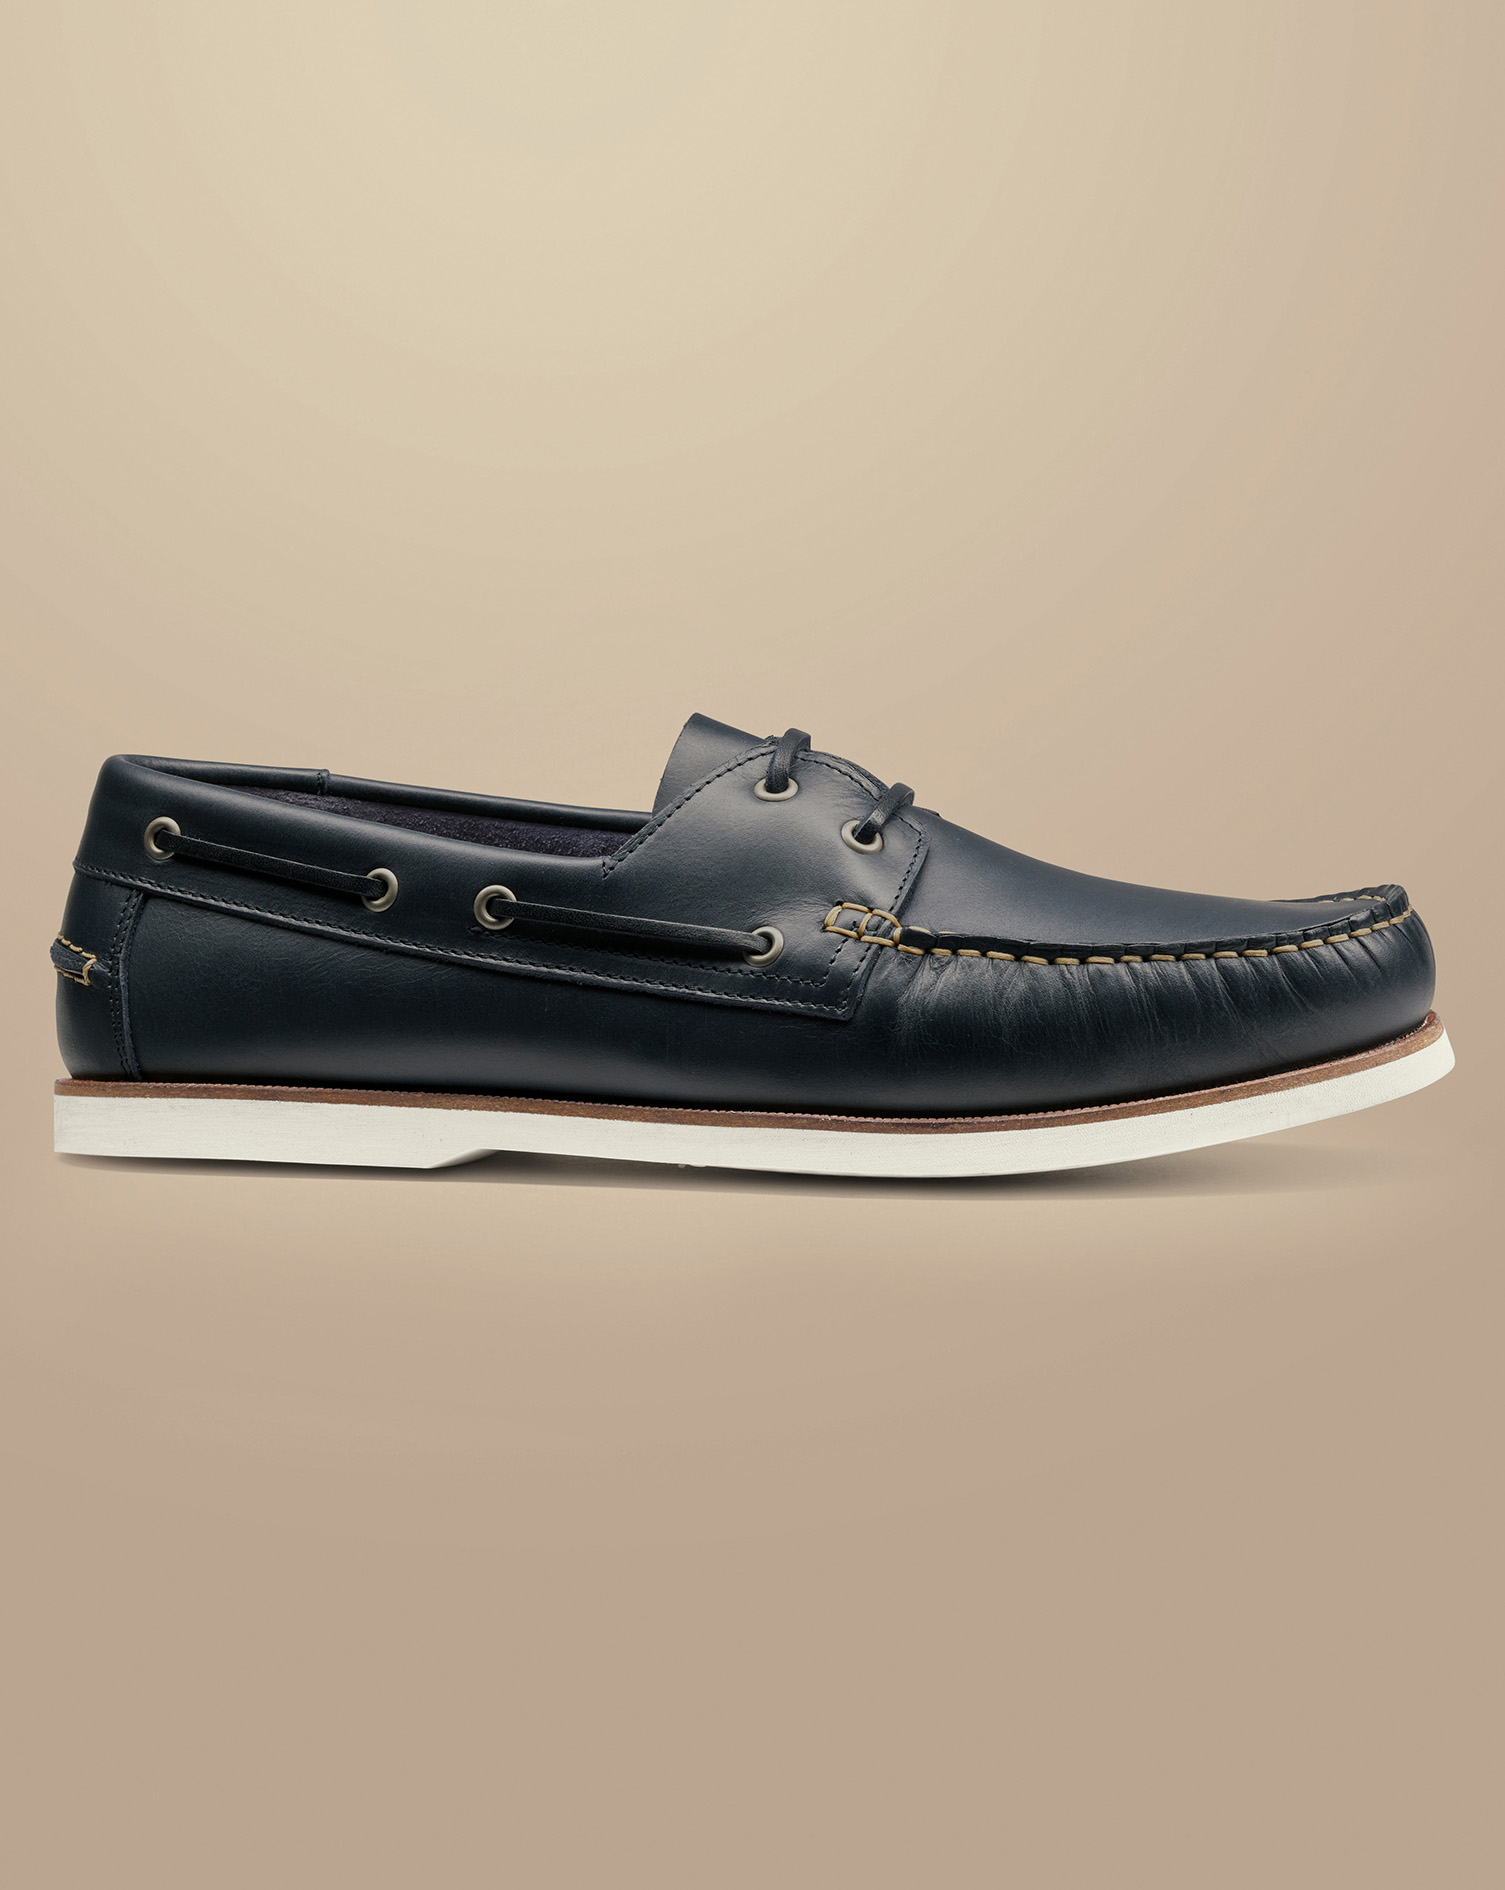 Men's Charles Tyrwhitt Leather Boat Shoe - Dark Navy Blue Size 12
